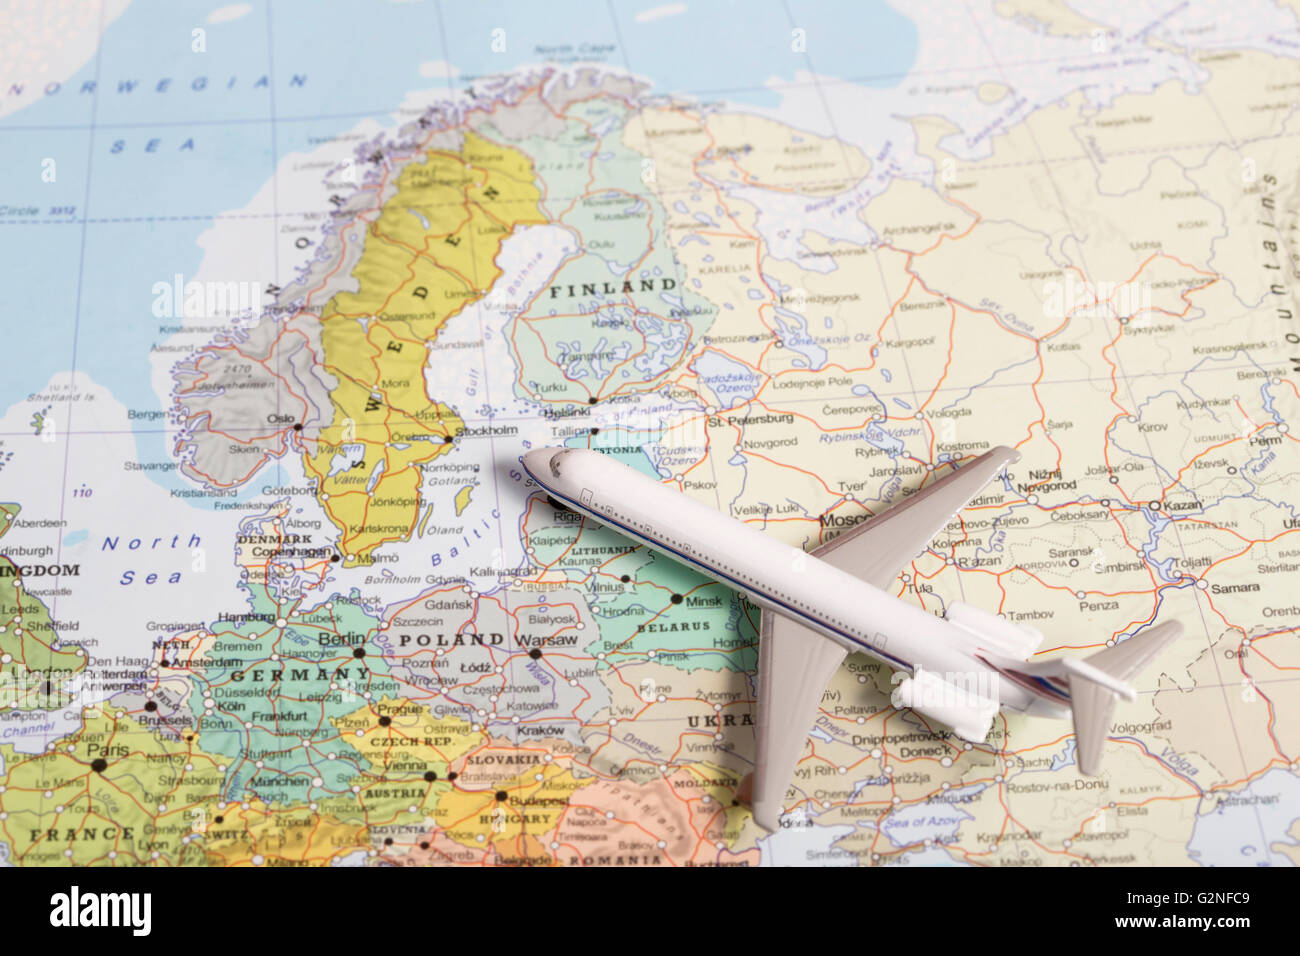 Miniatura di un aereo passeggeri battenti sulla mappa della Scandinavia dal sud est. Immagine concettuale per viaggi e turismo Foto Stock